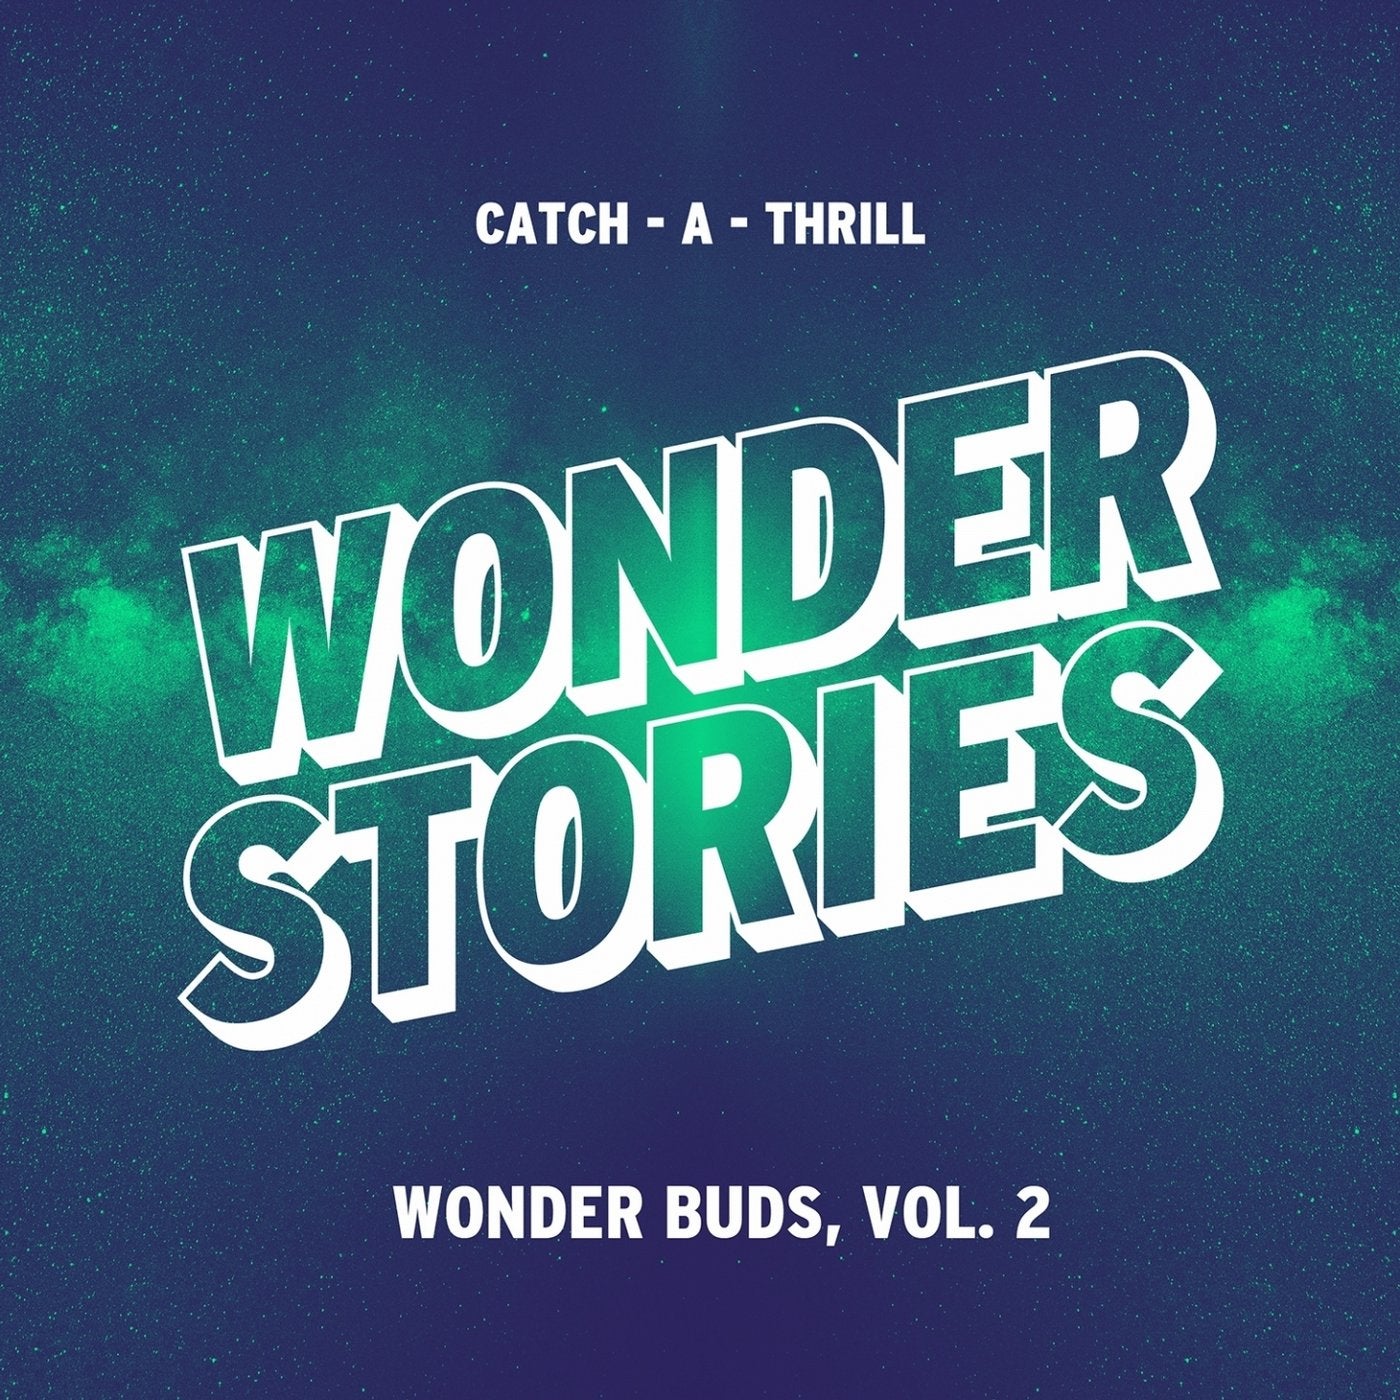 Wonder Buds, Vol. 2 (Catch-A-Thrill)